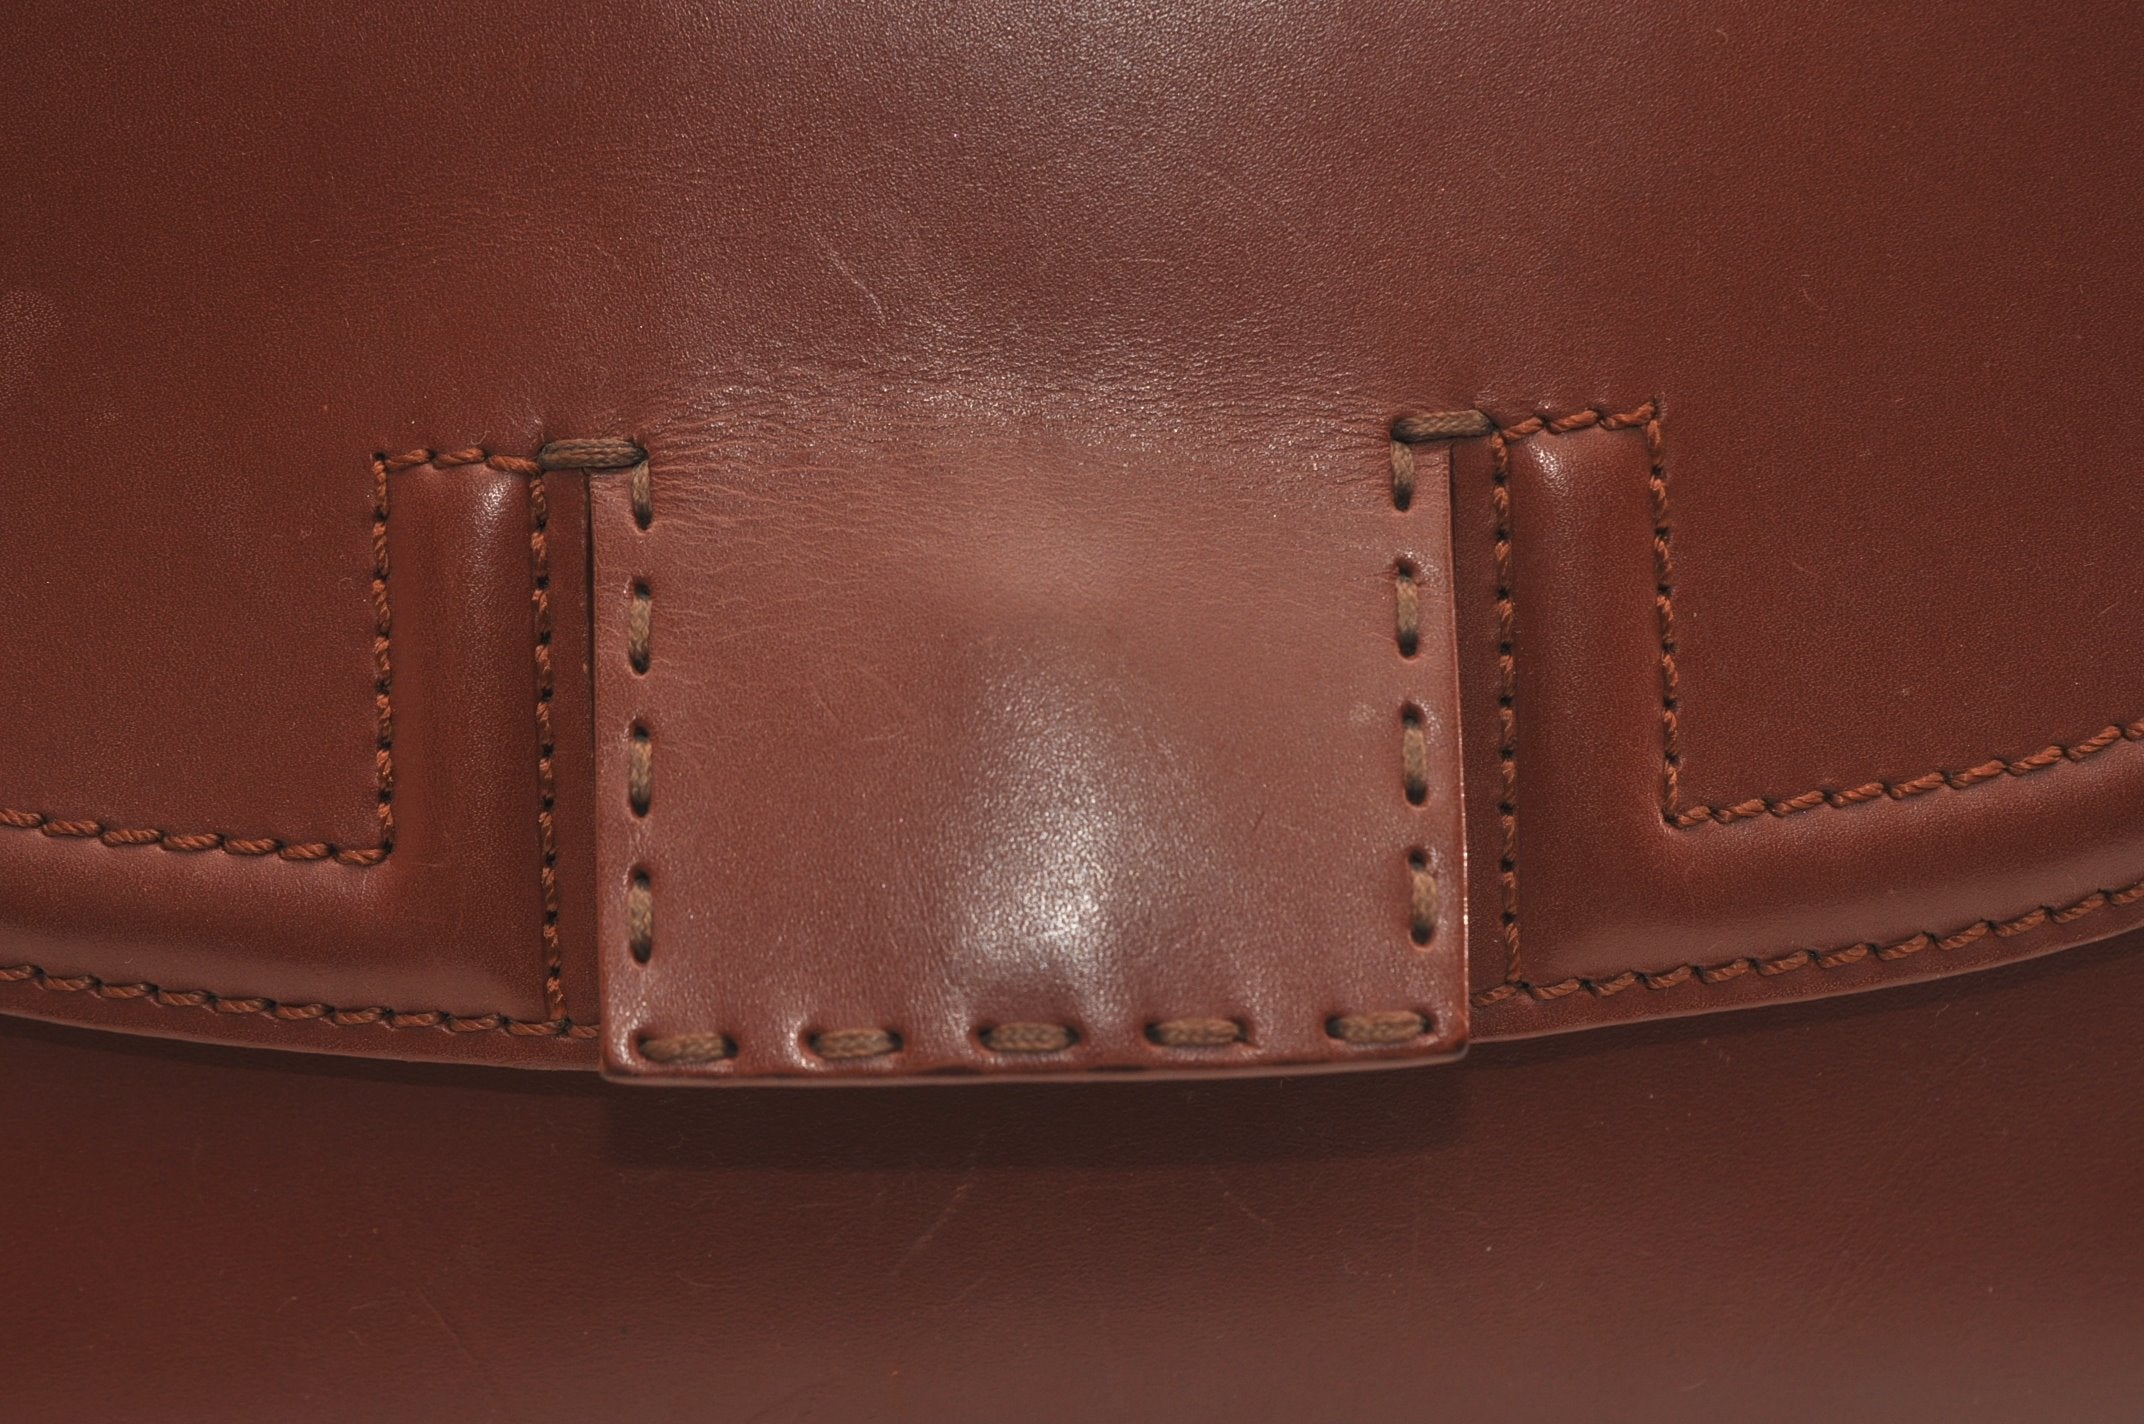 Authentic FENDI Pequin 2Way Shoulder Hand Bag Leather Canvas Brown Black 6983J